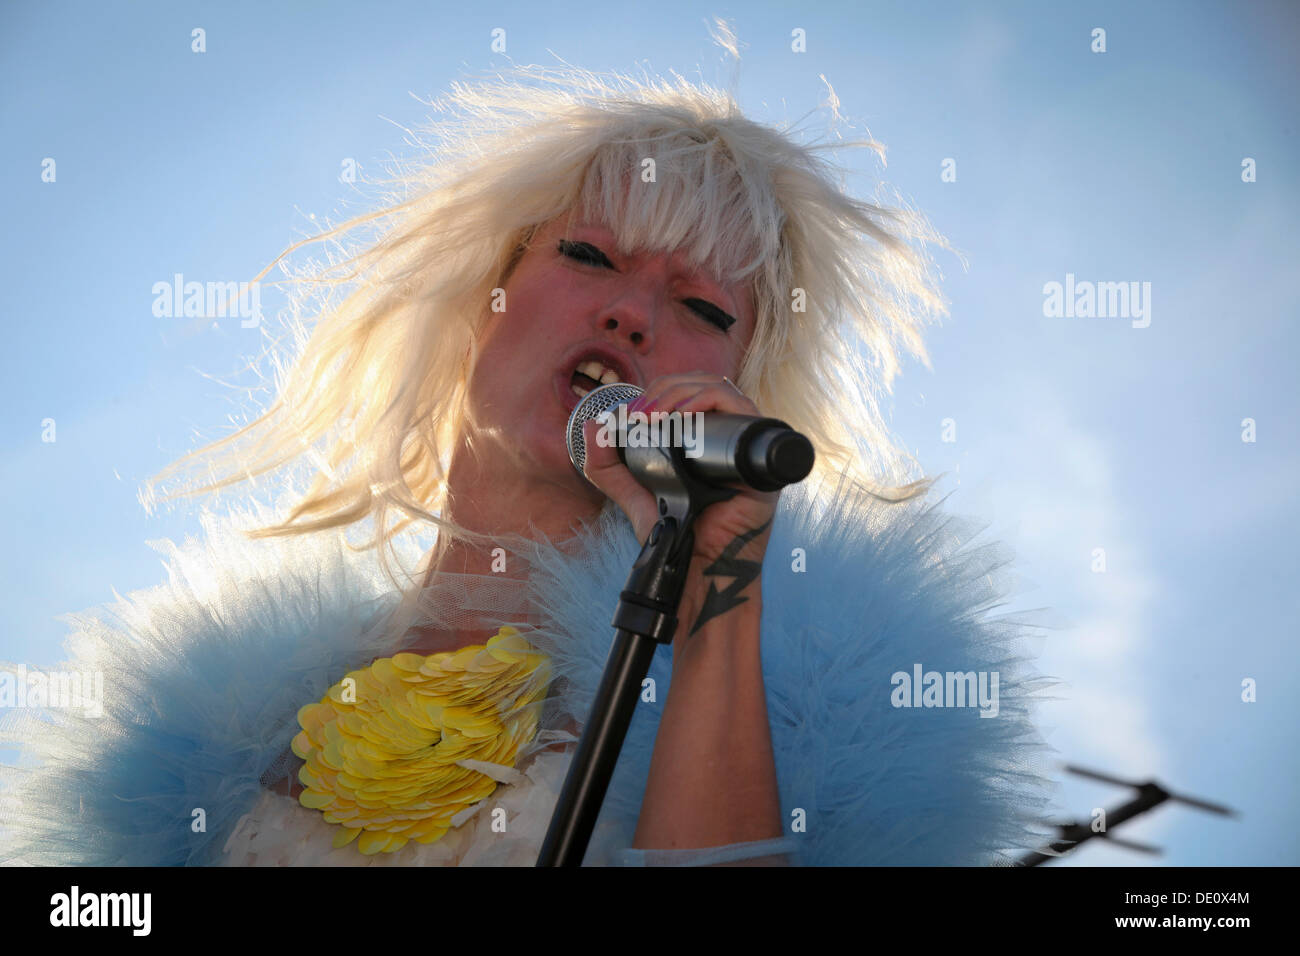 Mieze Katz, frontwoman de MIA, interpretando en vivo en los tejados durante el Festival 2012, Berlín Foto de stock